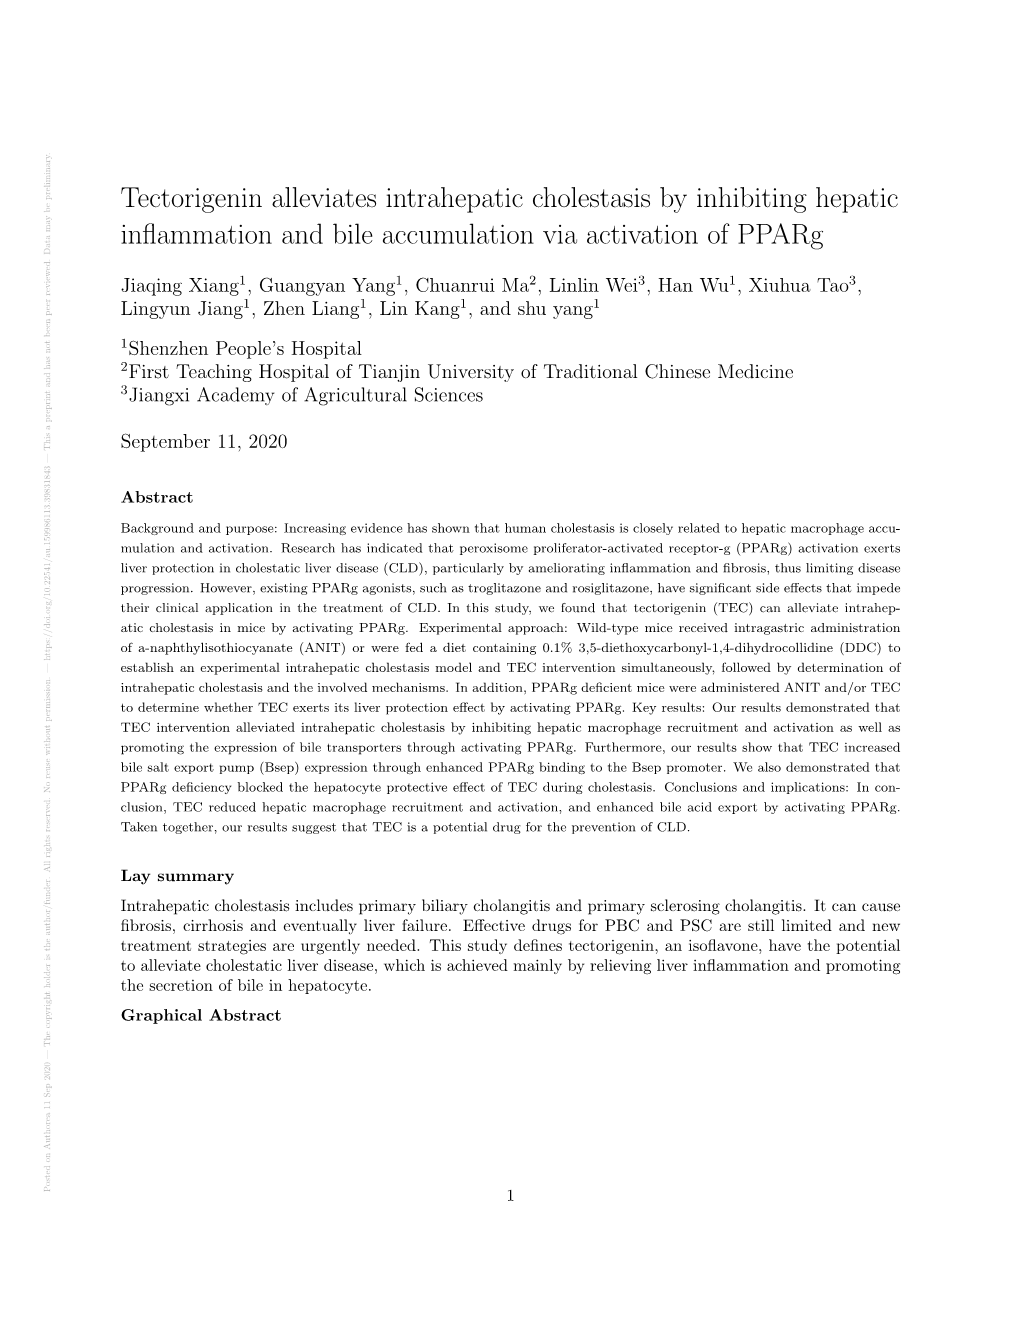 Tectorigenin Alleviates Intrahepatic Cholestasis by Inhibiting Hepatic